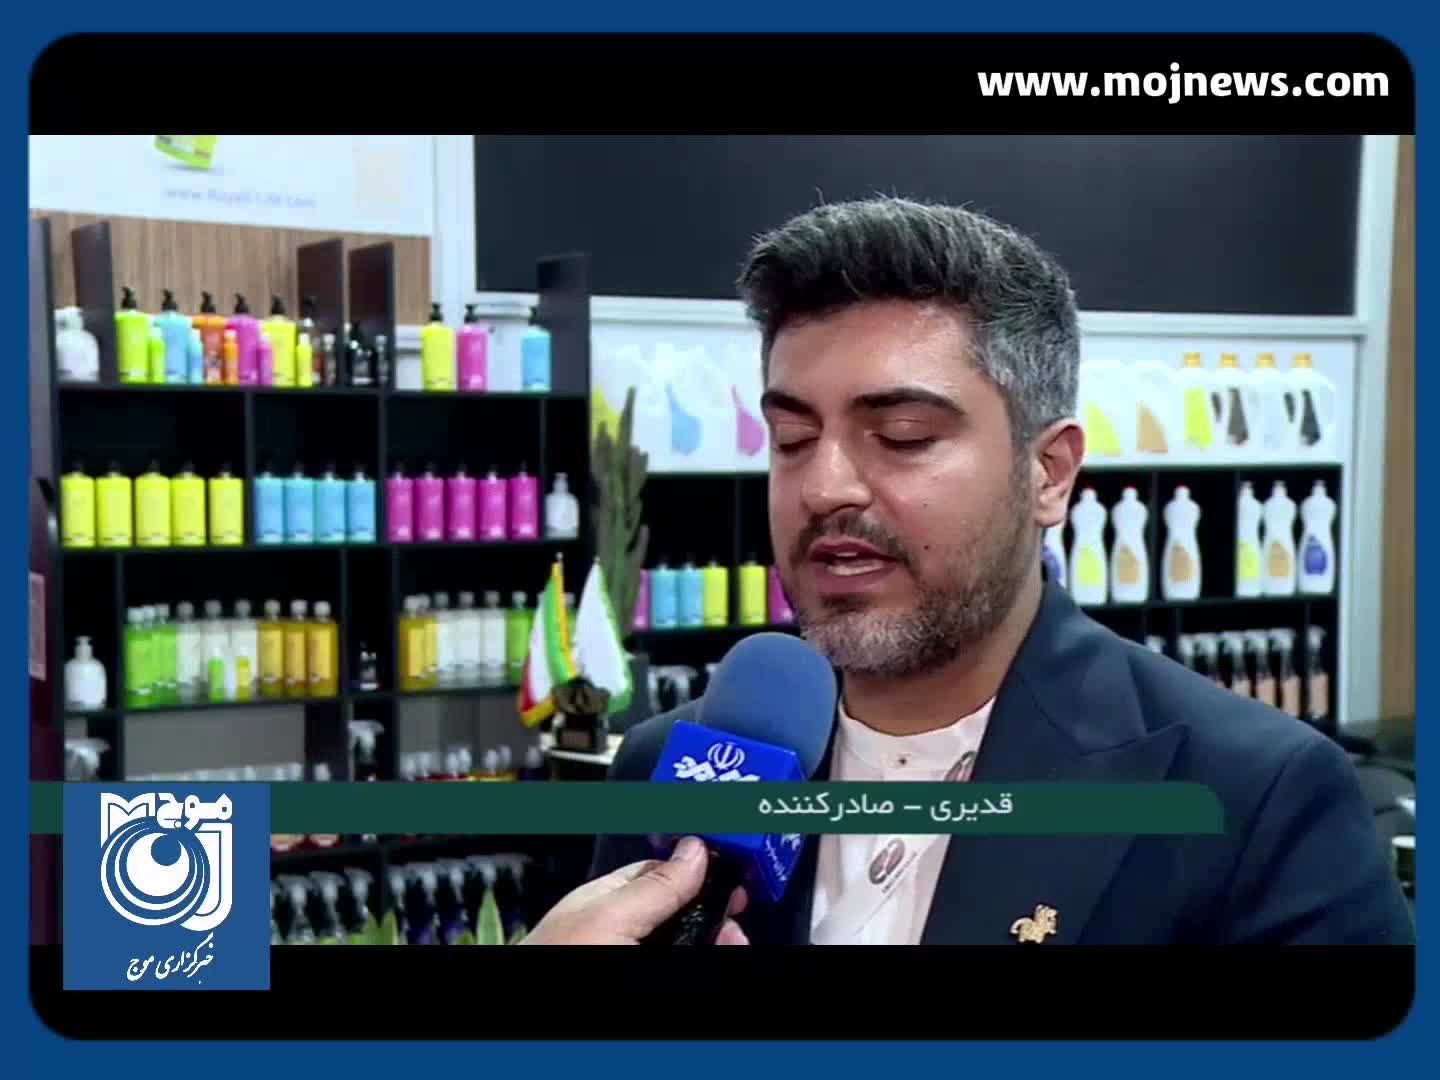 سهم ۱۳۰ میلیون دلاری ایران از بازار جهانی محصولات آرایشی و بهداشتی + فیلم